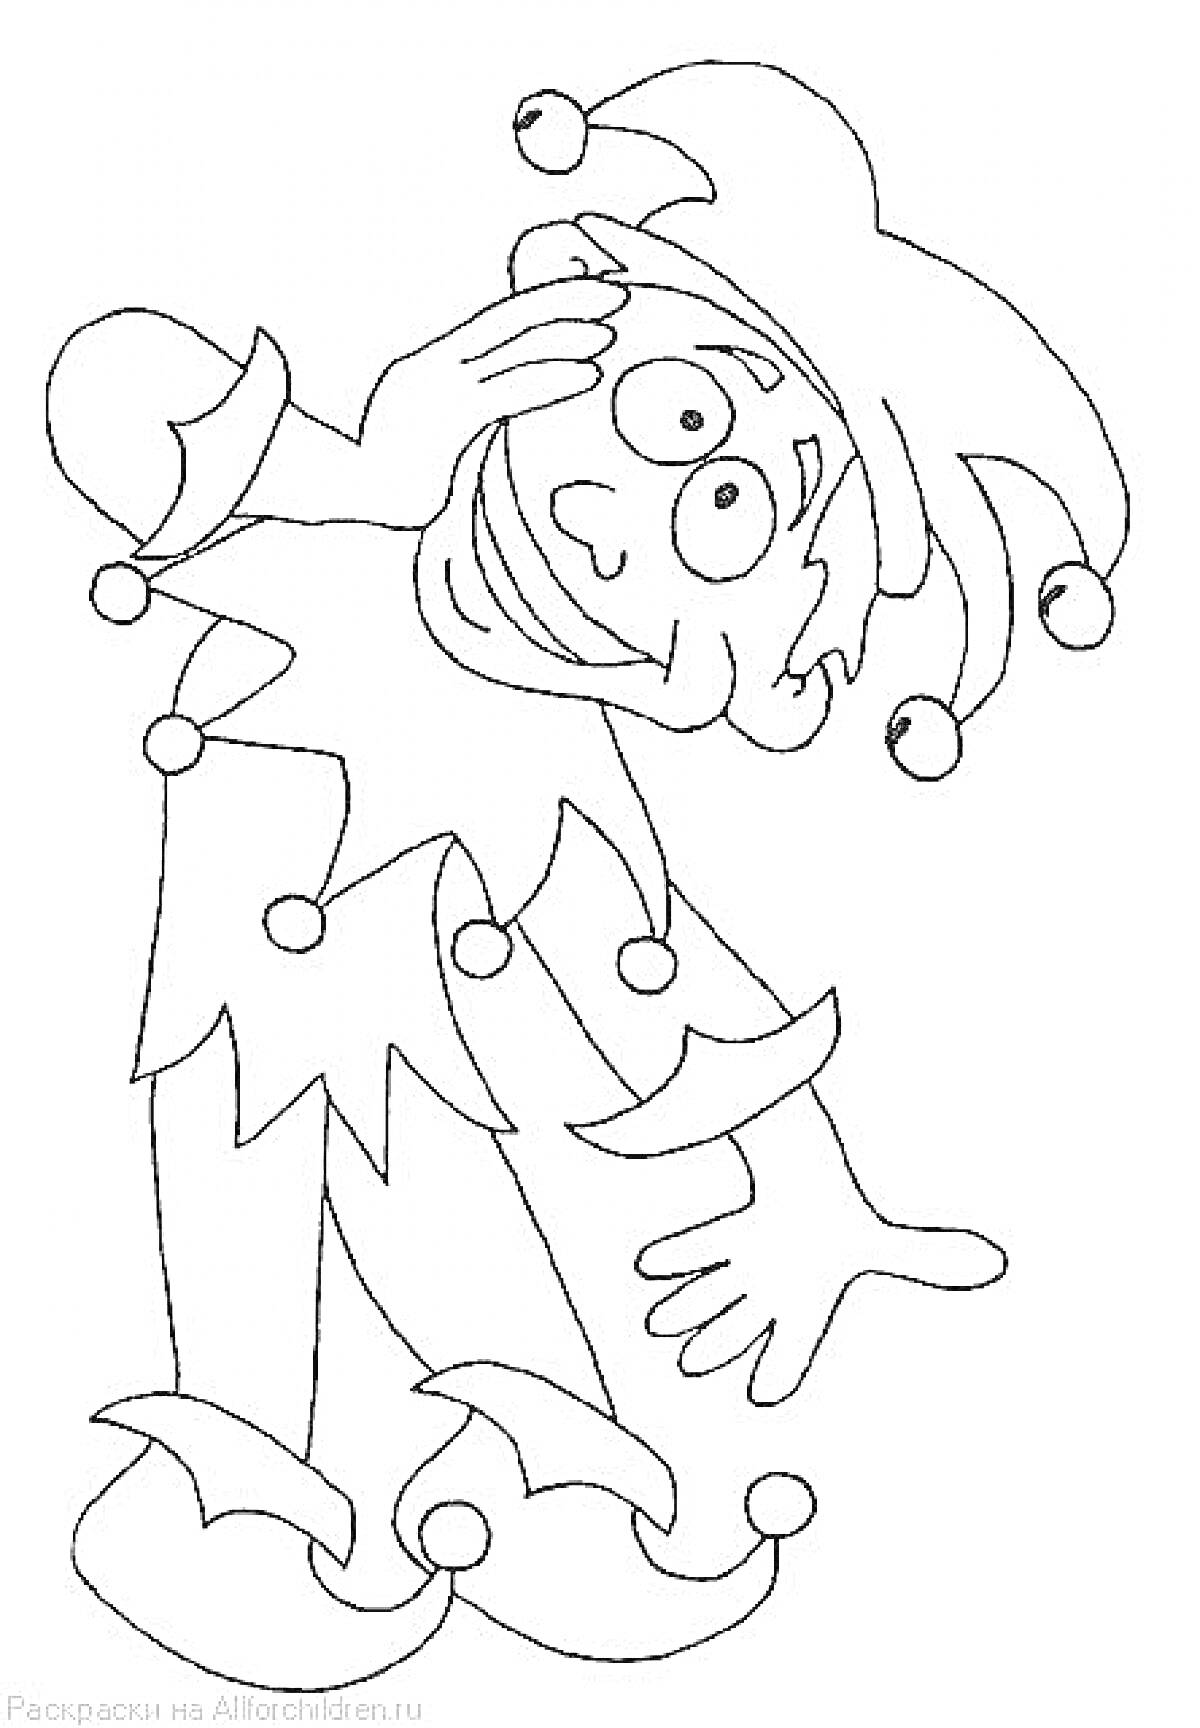 Раскраска Петрушка с бубенцами на шляпе и костюме, заглядывающий из-за руки